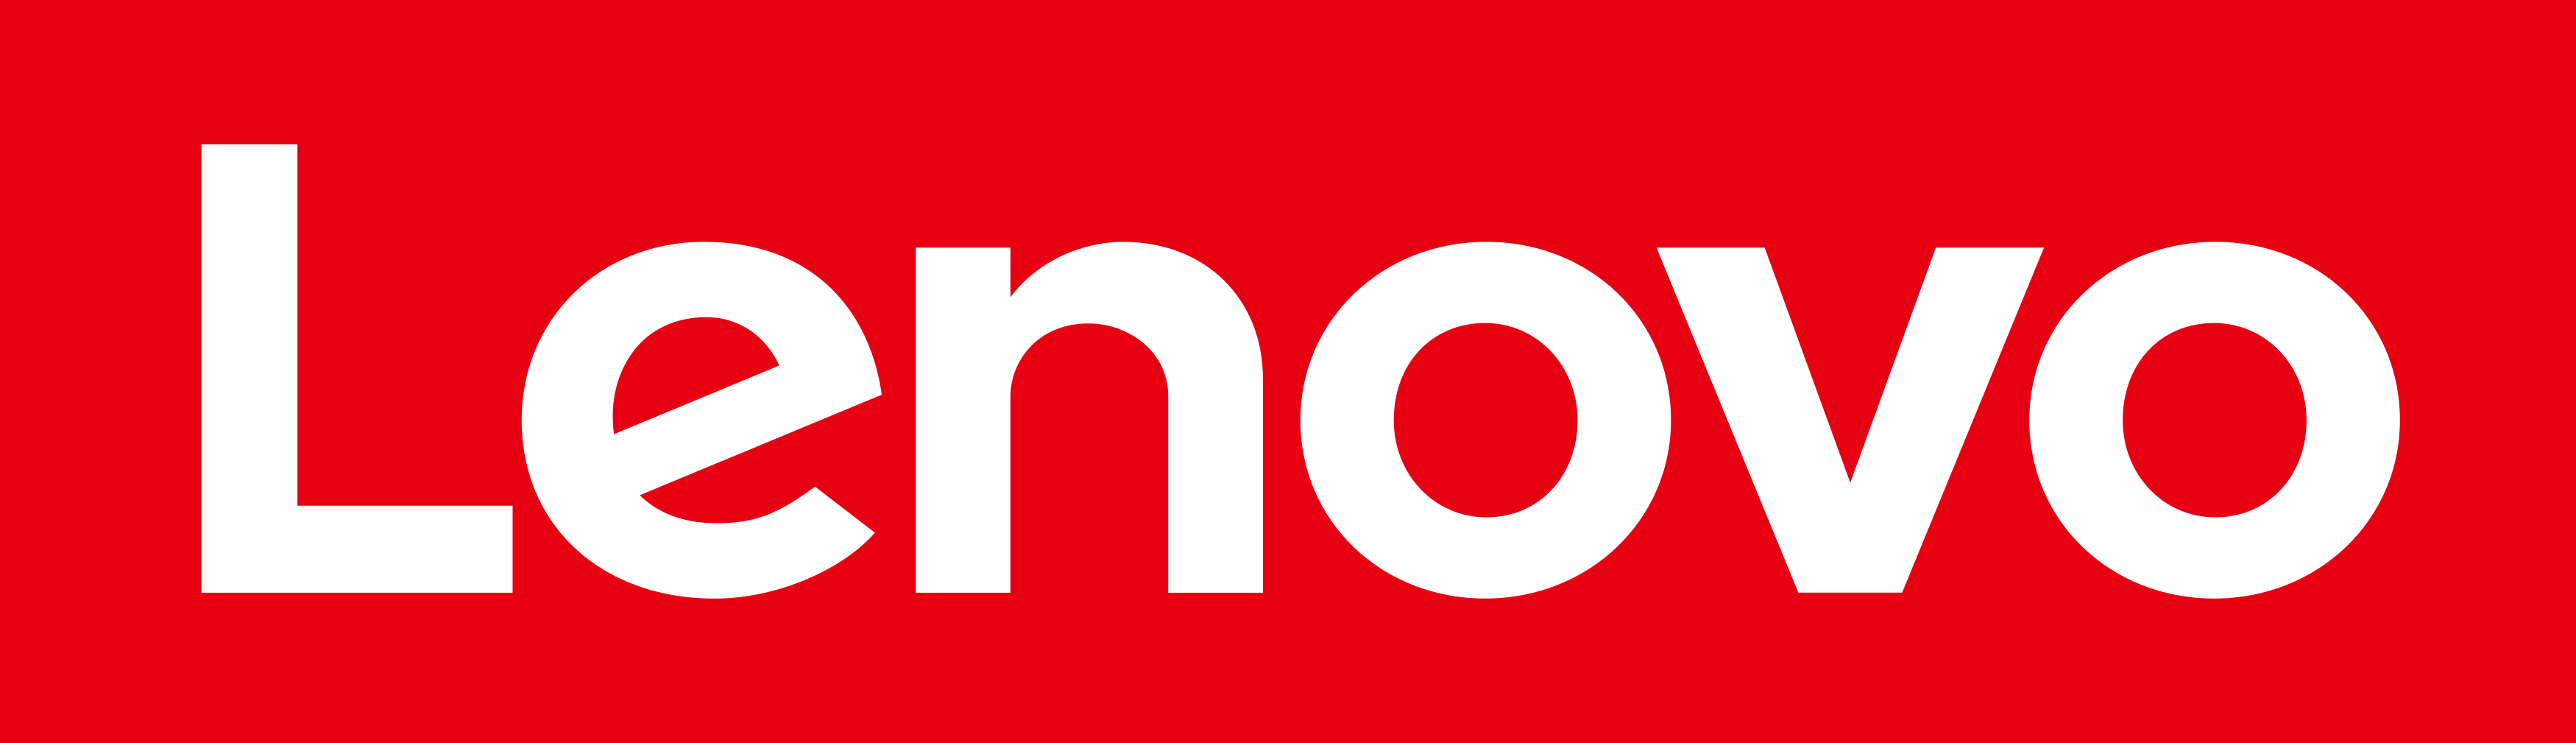 lenovo-brand-logo